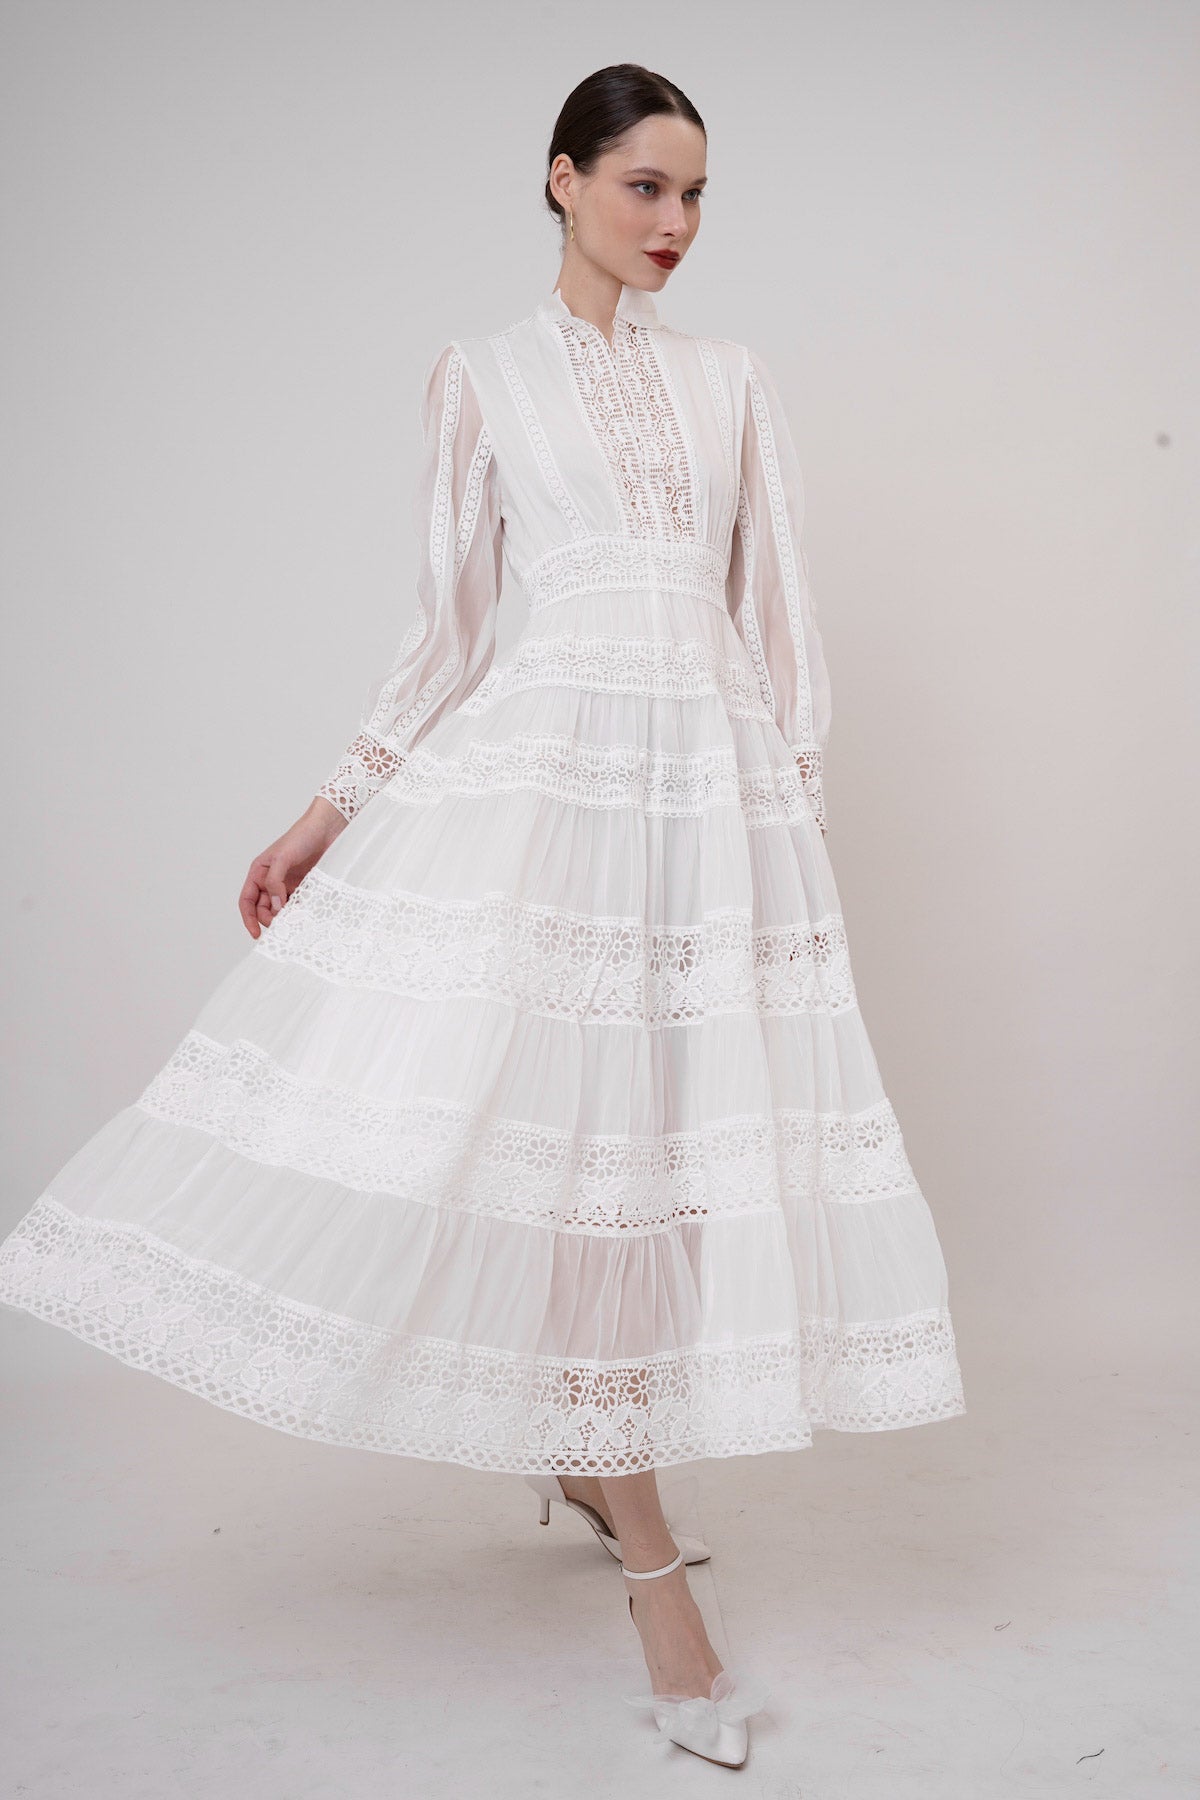 Ninette Dress In White (LAST PIECE)